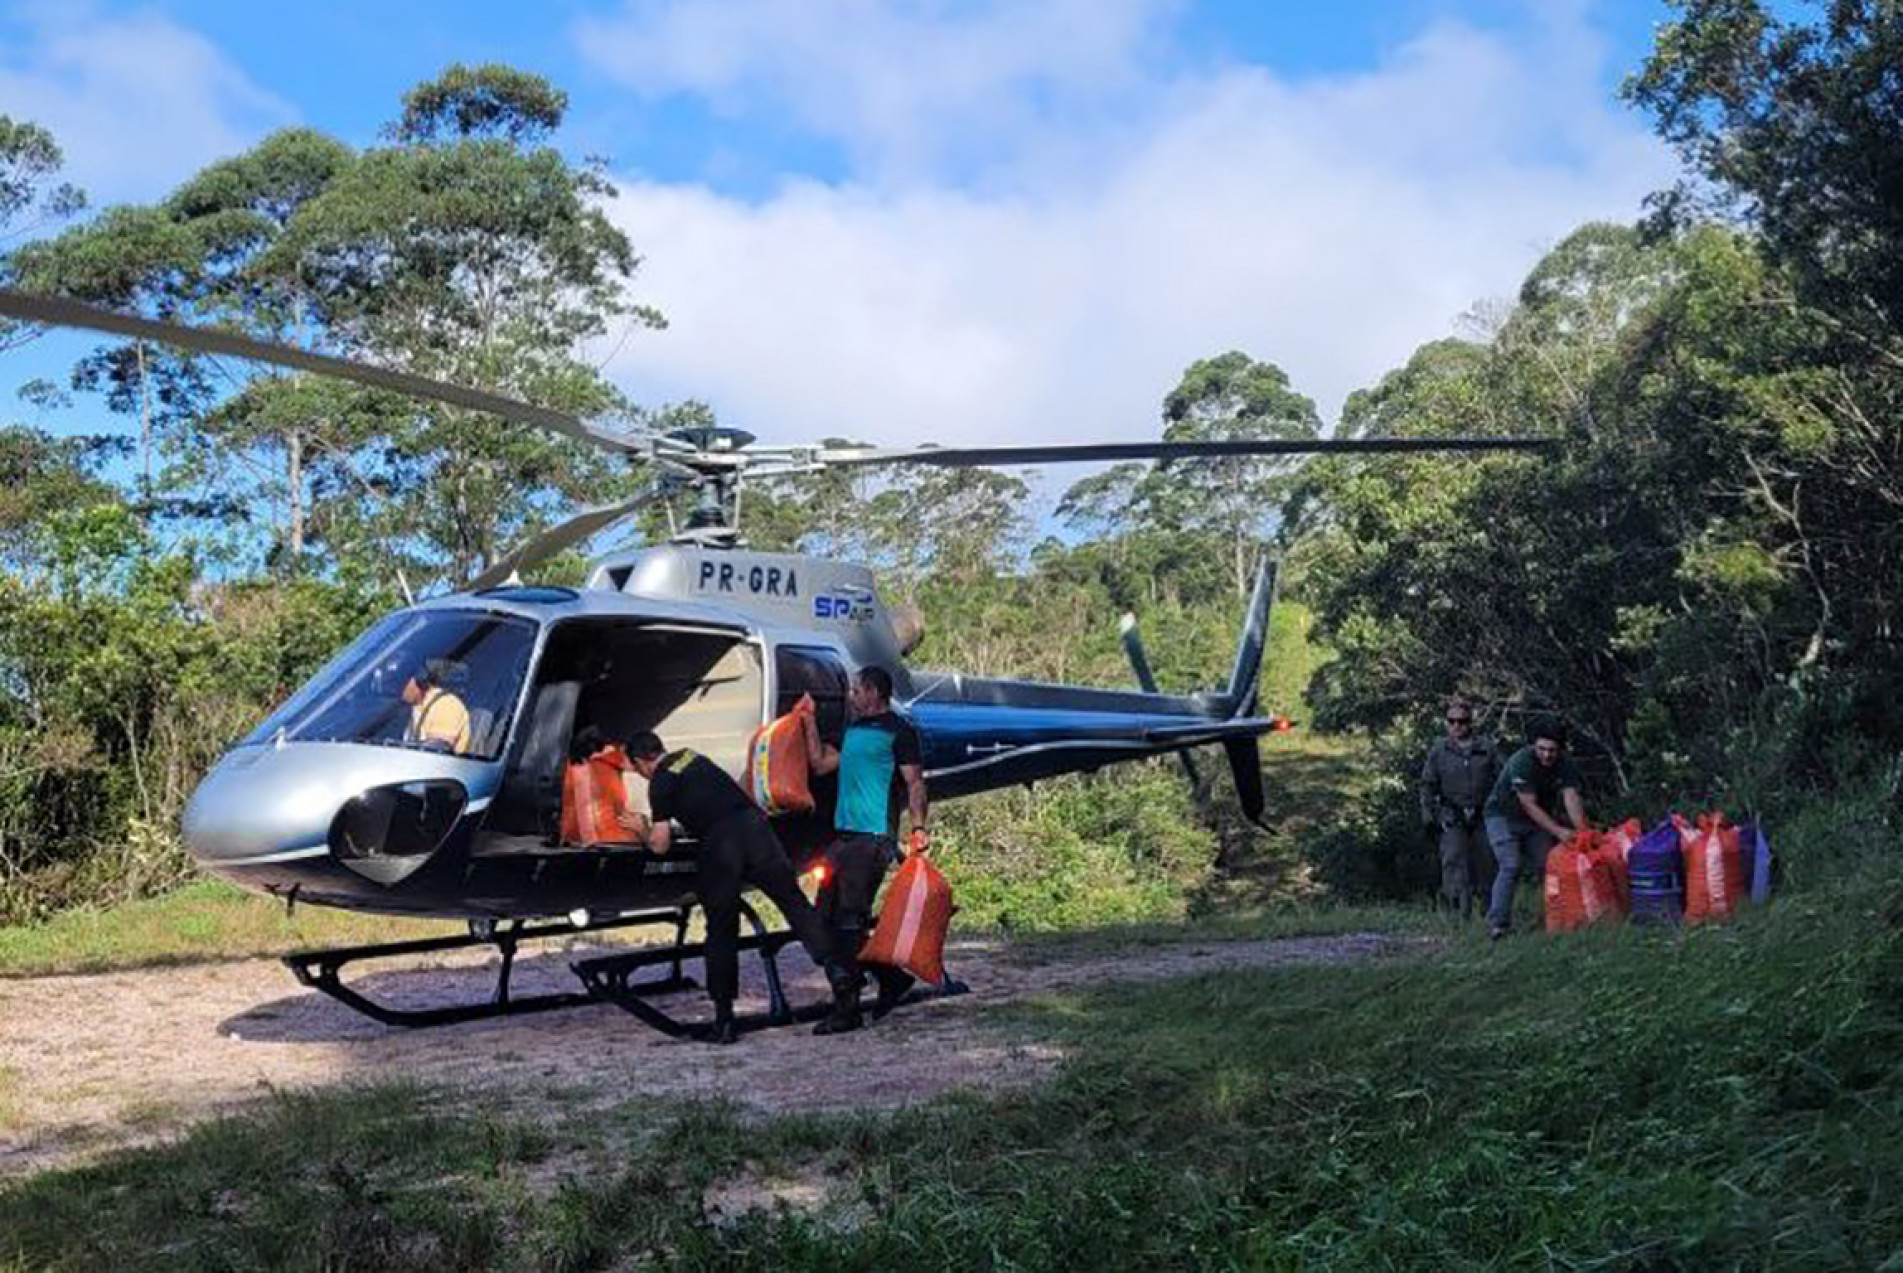 As sementes são lançadas de drones e helicópteros em áreas protegidas do Estado de São Paulo